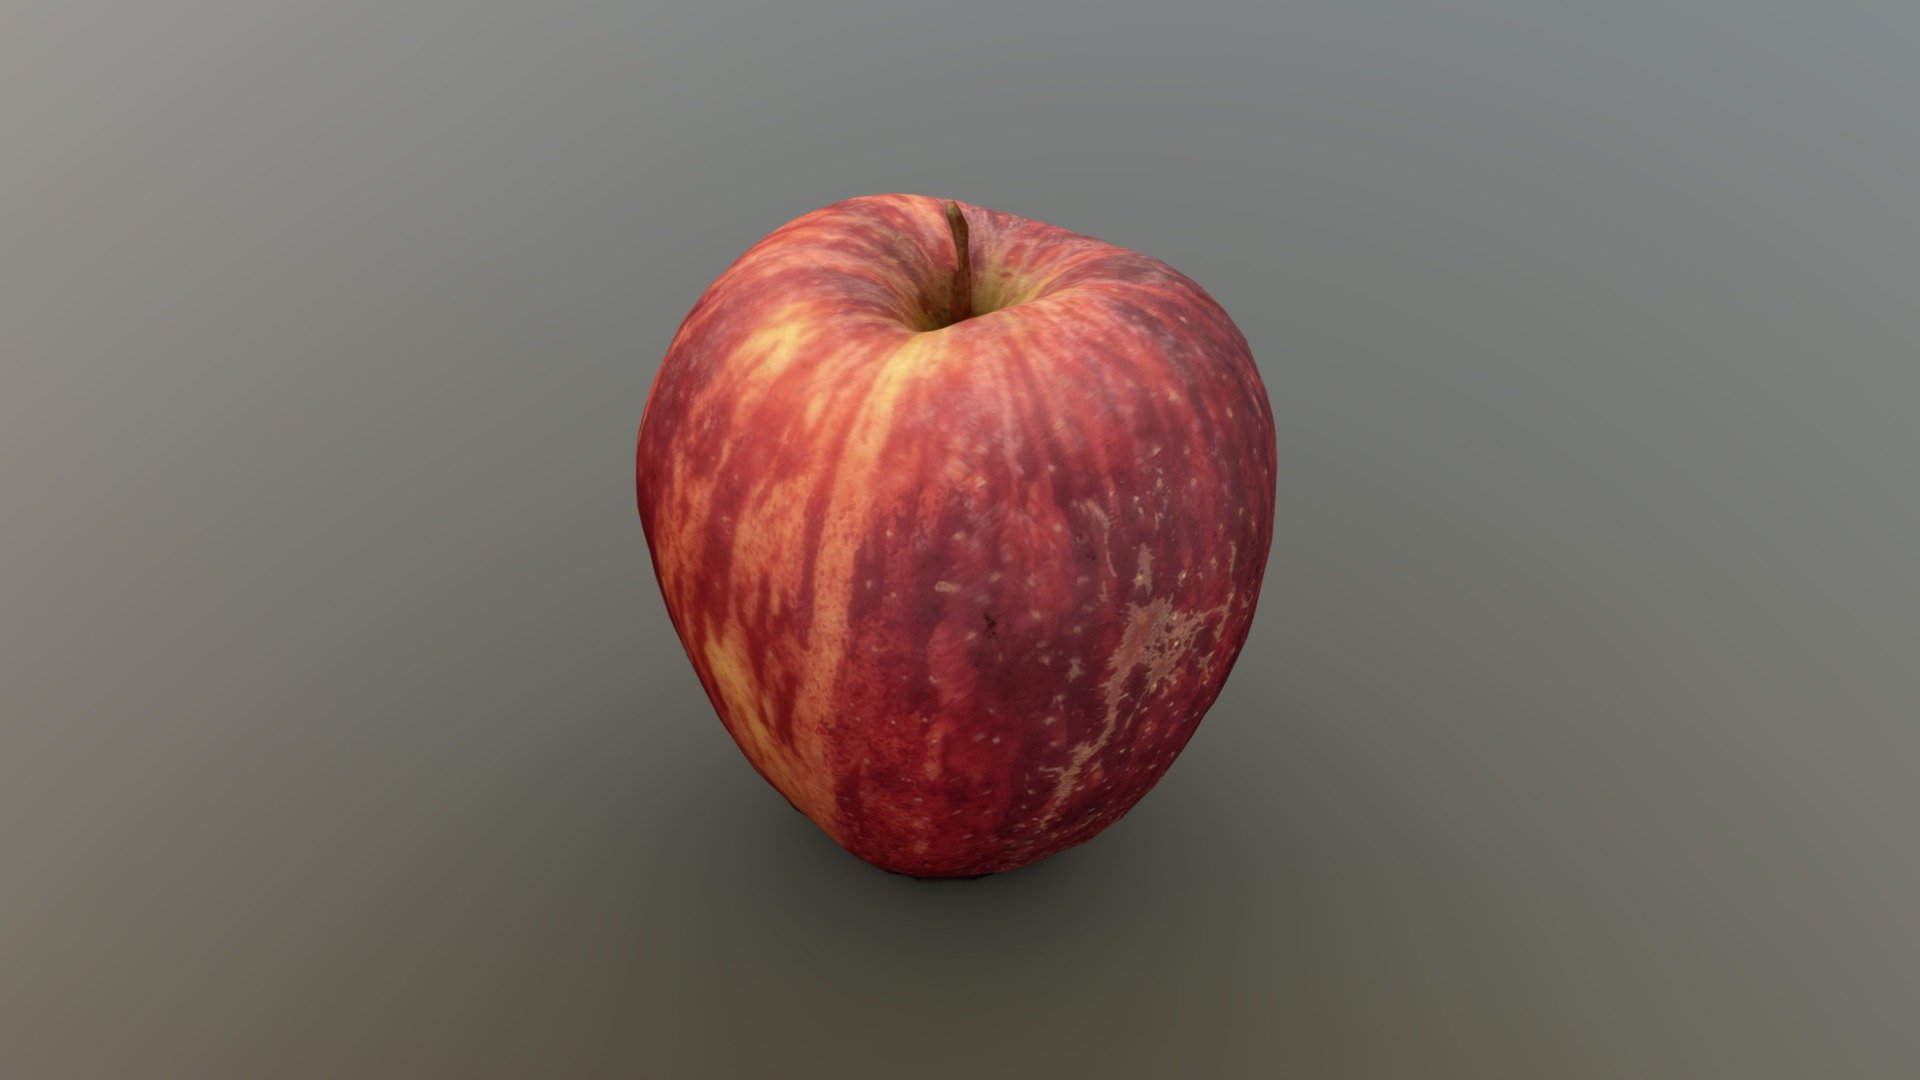 Apple photogrammetry using Agisoft Metashape for 3rd Year Advanced 3D Graphics - Apple (photogrammetrised) - 3D model by DJMiddi 3d model